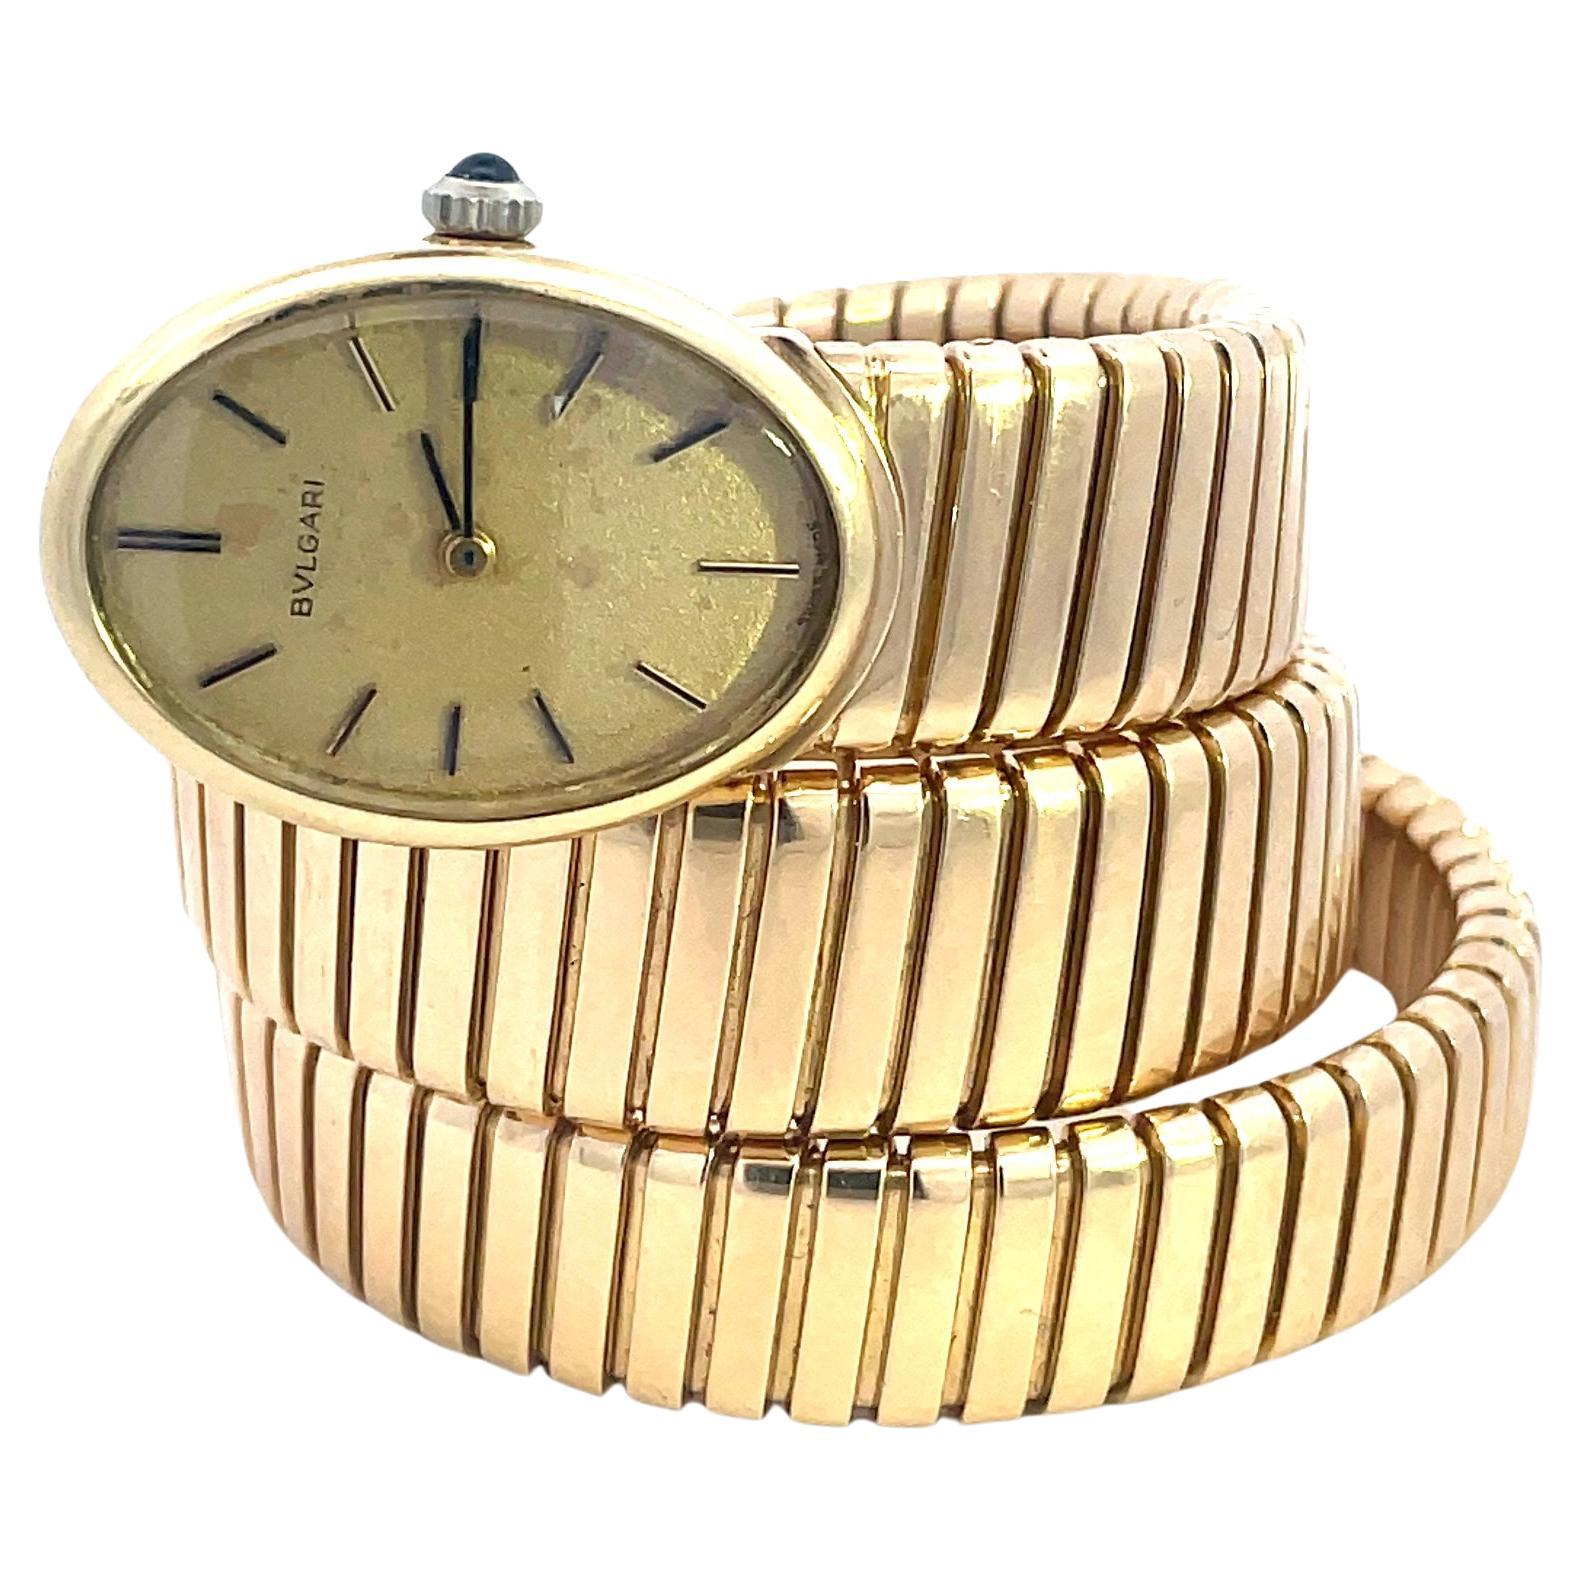 Rare montre Bulgari Tubogas Vintage, en or jaune 18 carats, circa 1965.
La montre en or est dotée d'un boîtier ovale et d'un cadran champagne mat. Le cadran est équipé d'aiguilles en or.
La Juvenia à remontage manuel est ornée d'un saphir bleu